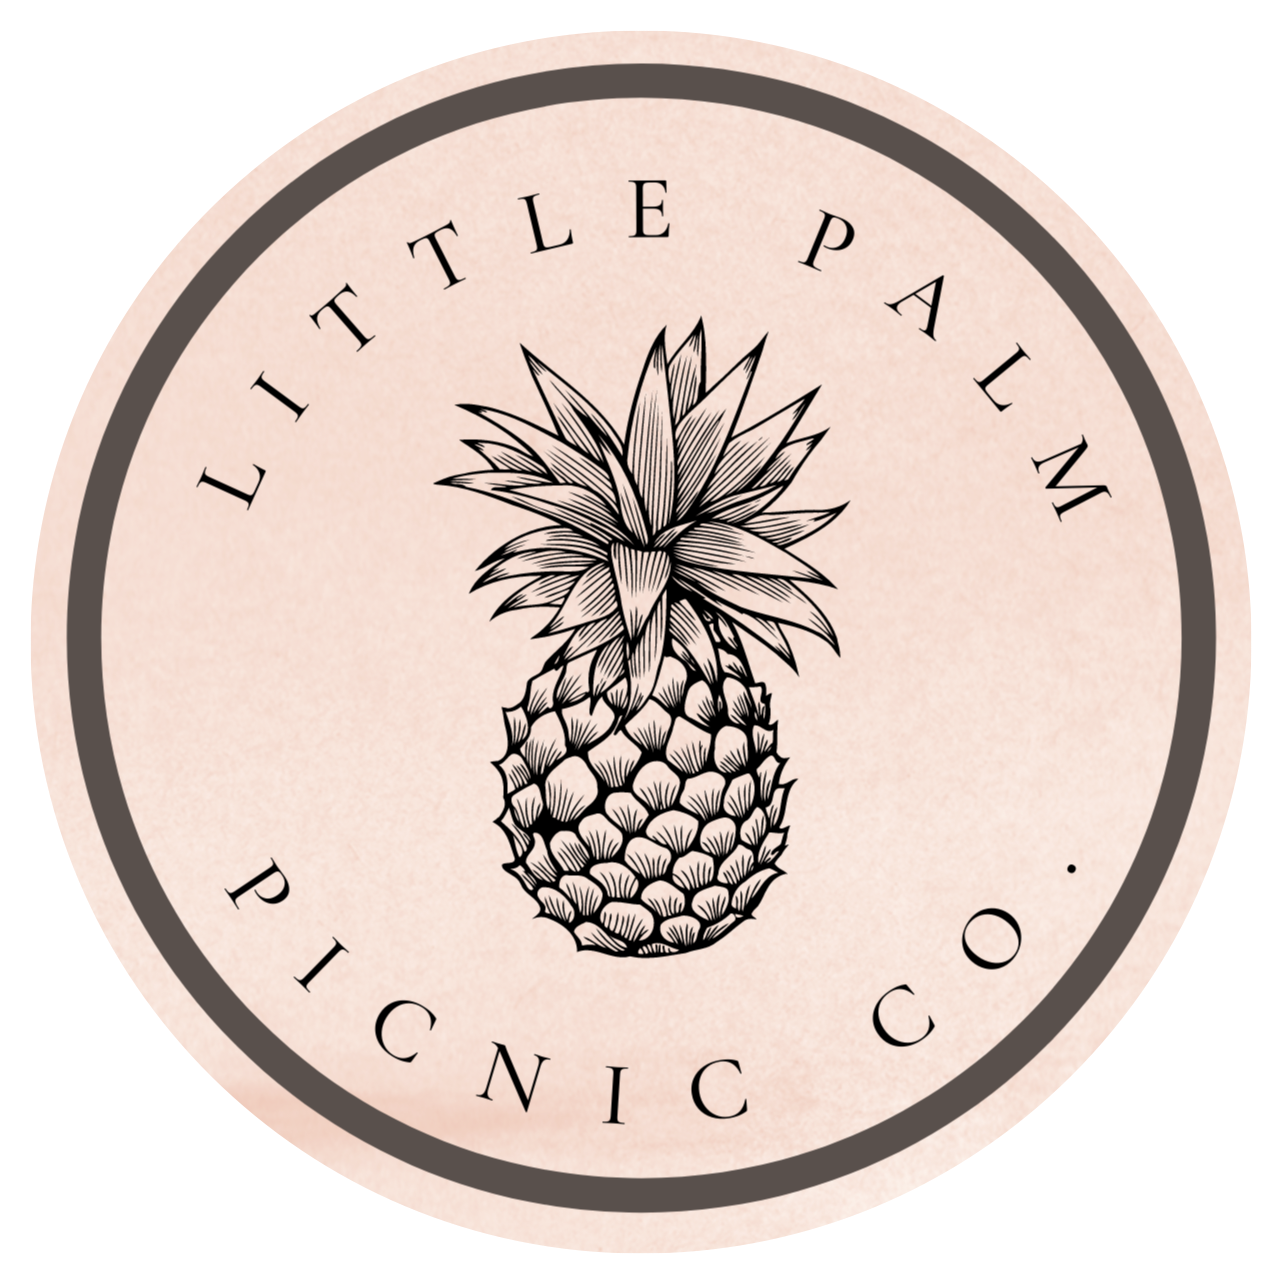 Little Palm Picnic Co.